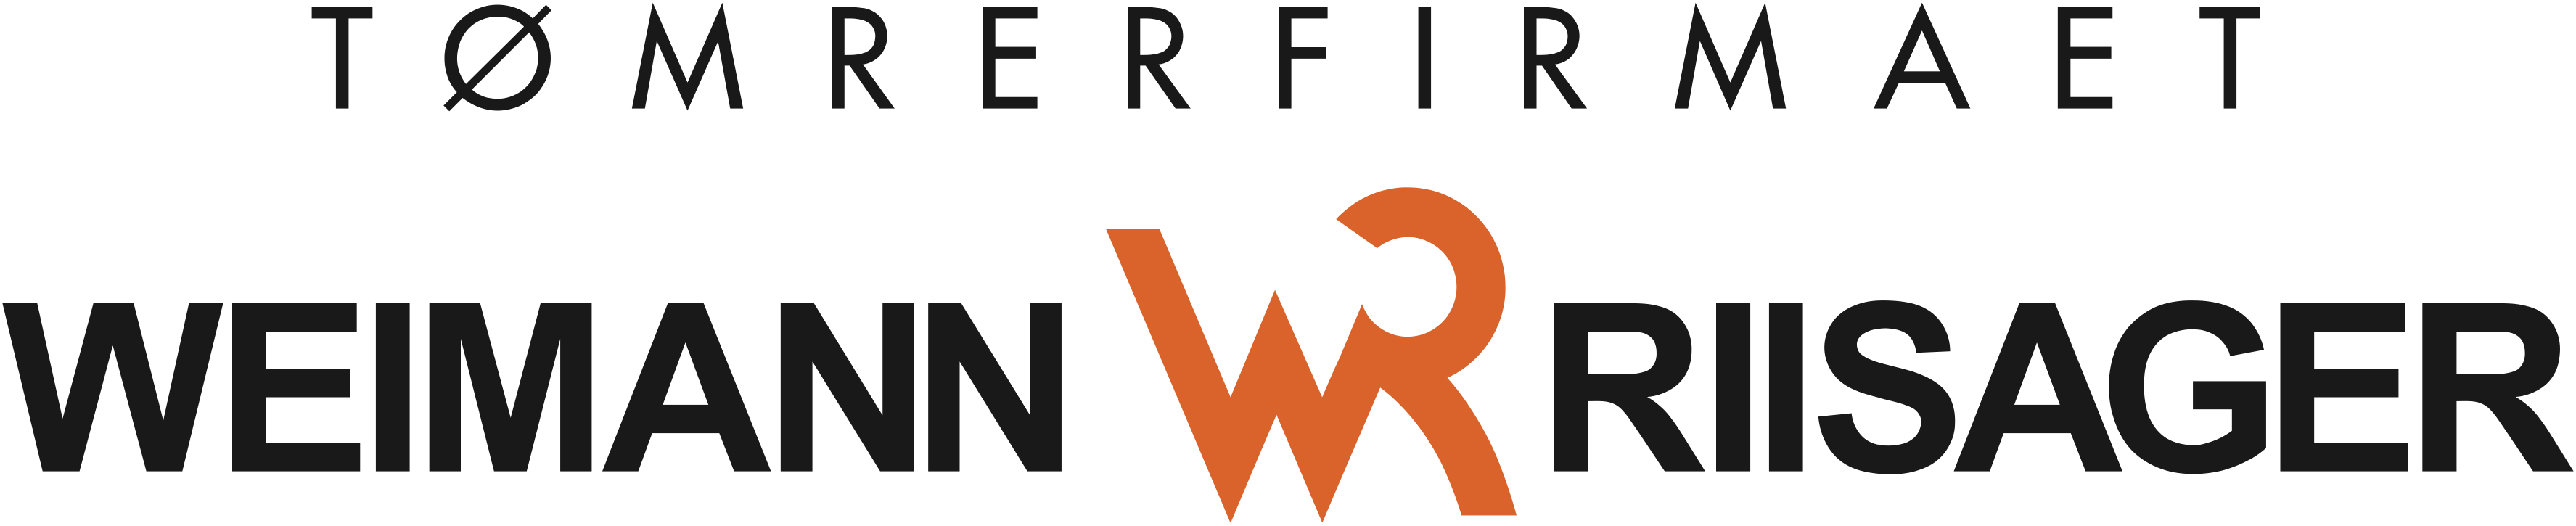 Weimann og Riisager logo